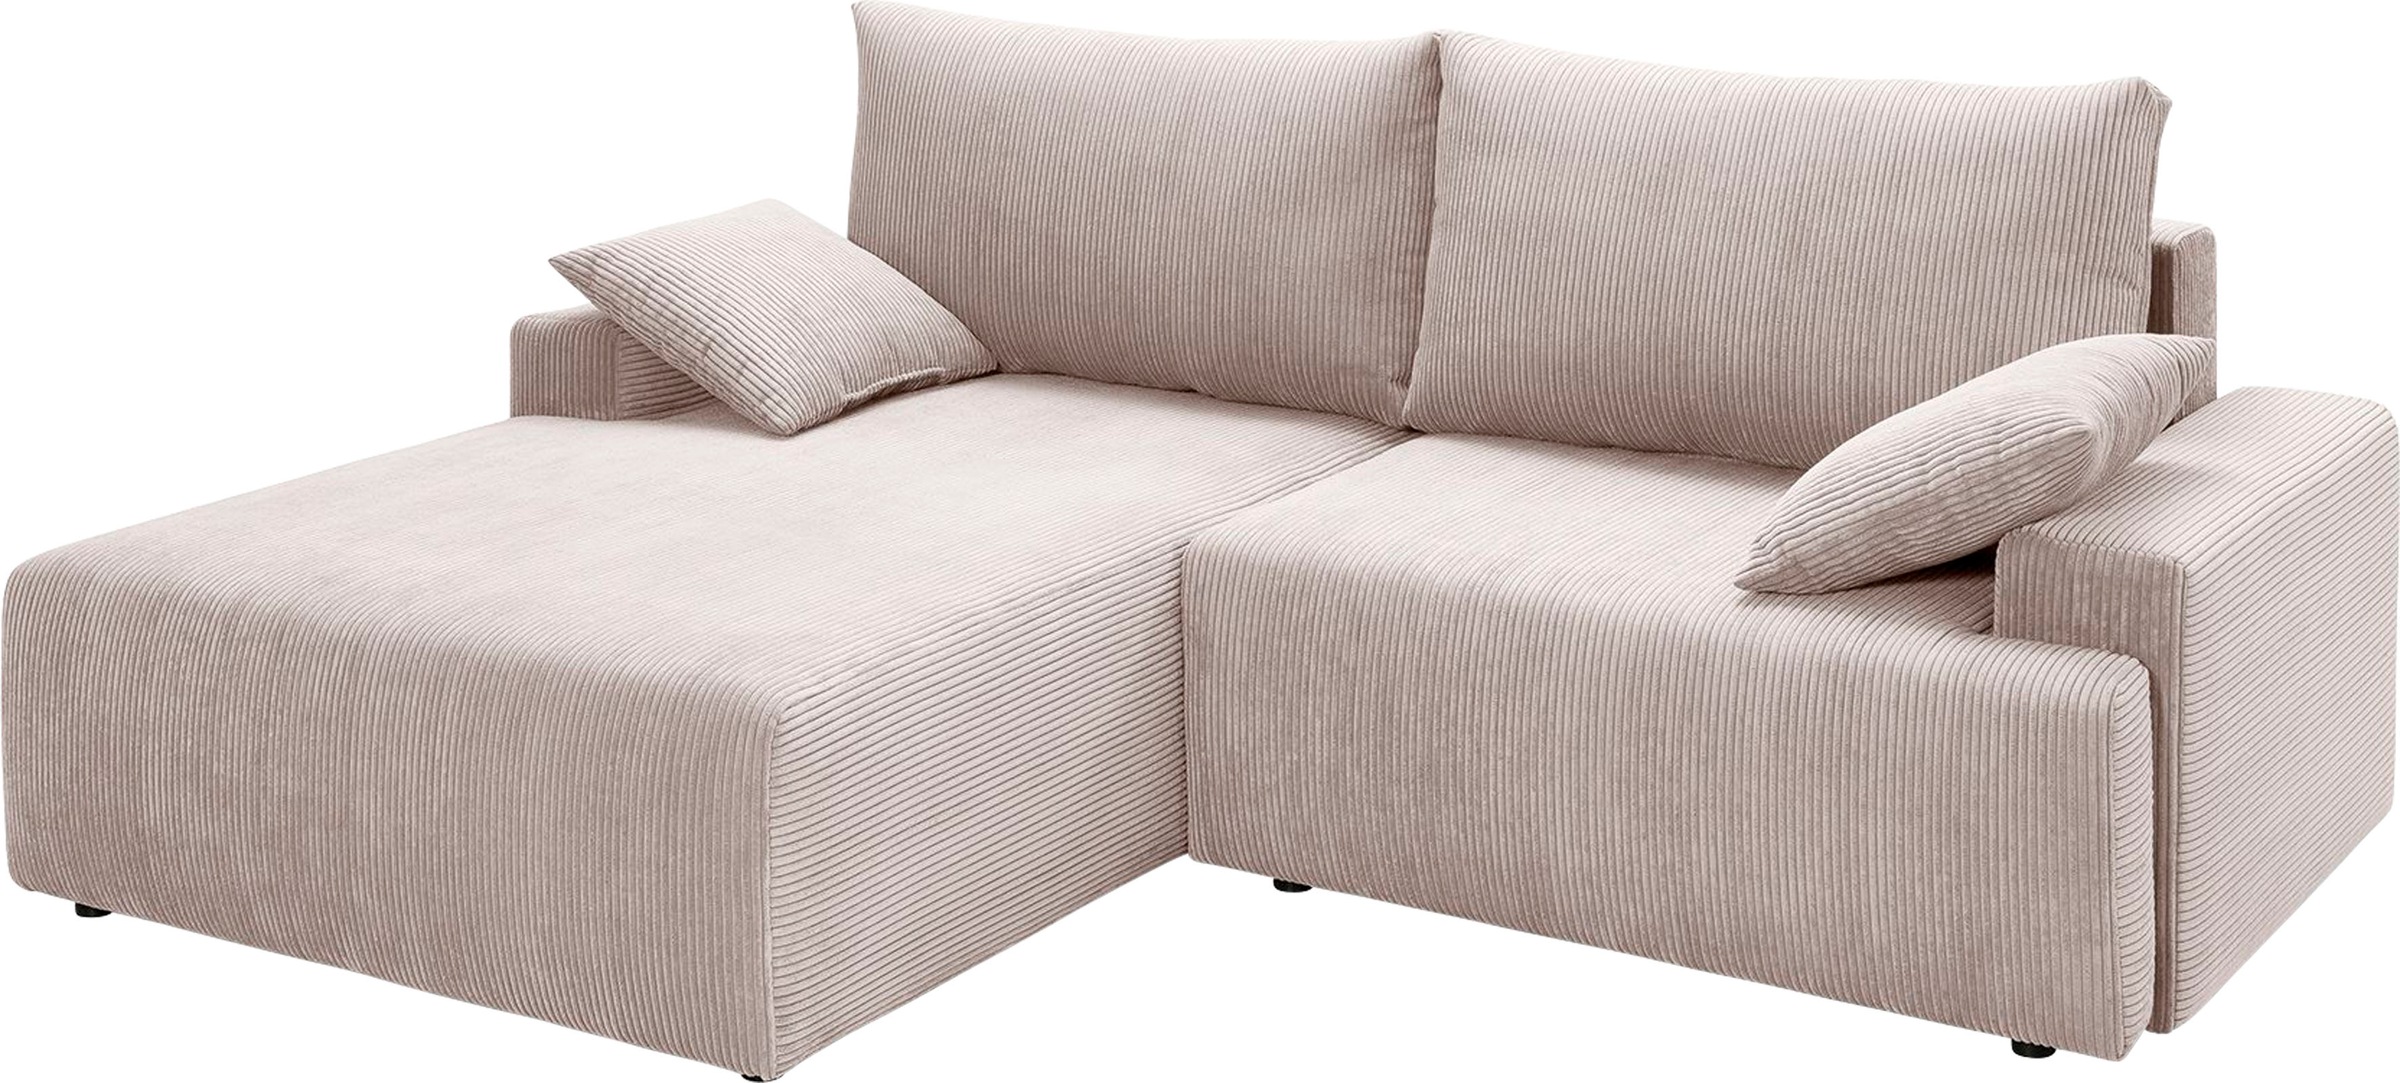 verschiedenen bestellen inklusive - Bettkasten exxpo »Orinoko«, Bettfunktion sofa bequem Ecksofa in Cord-Farben fashion und